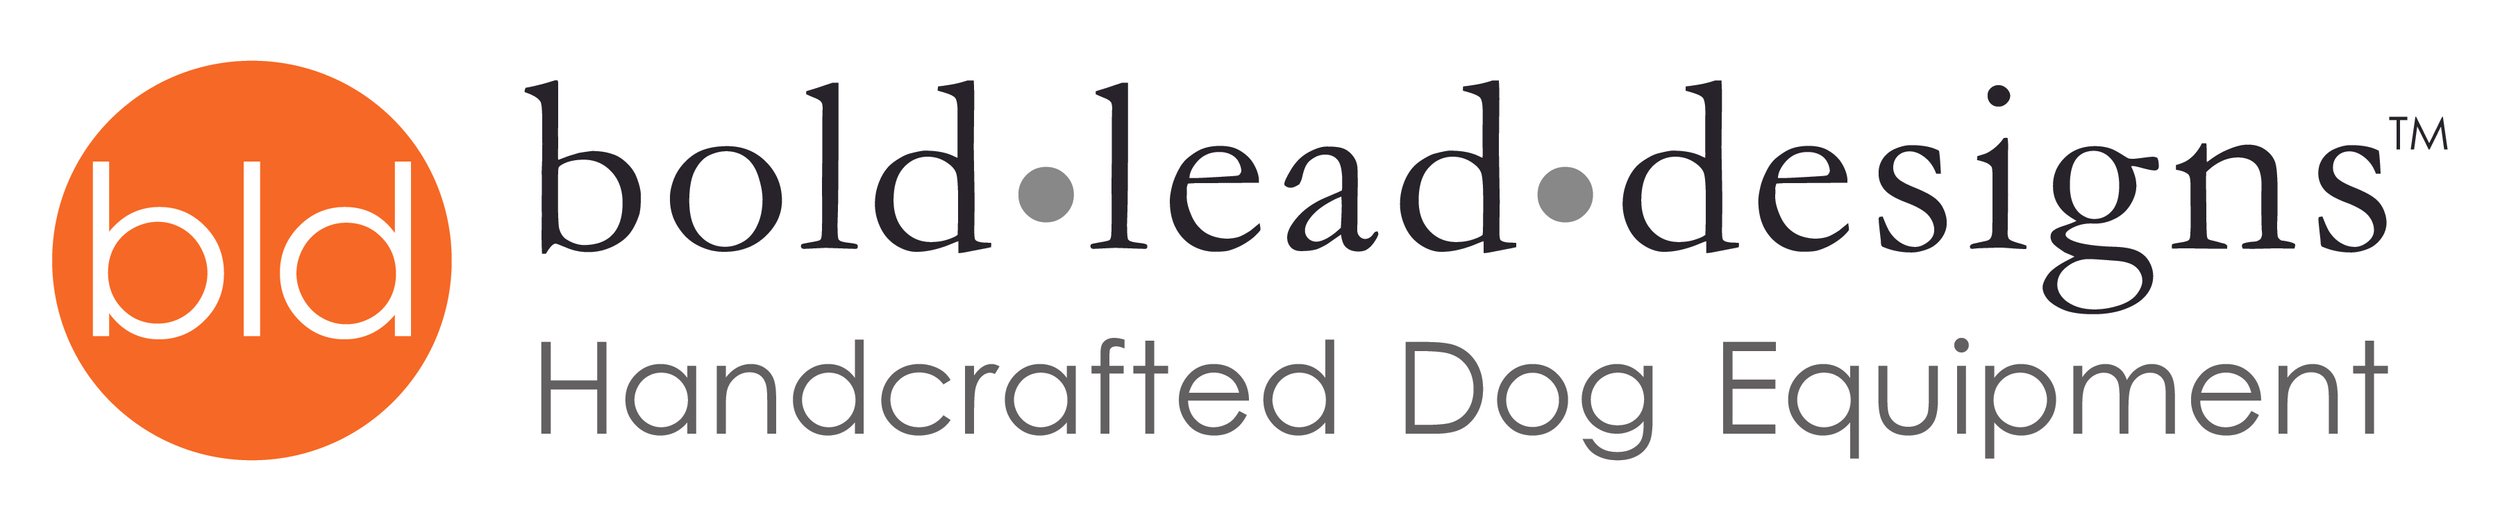 Bold Lead Designs Logo.jpg